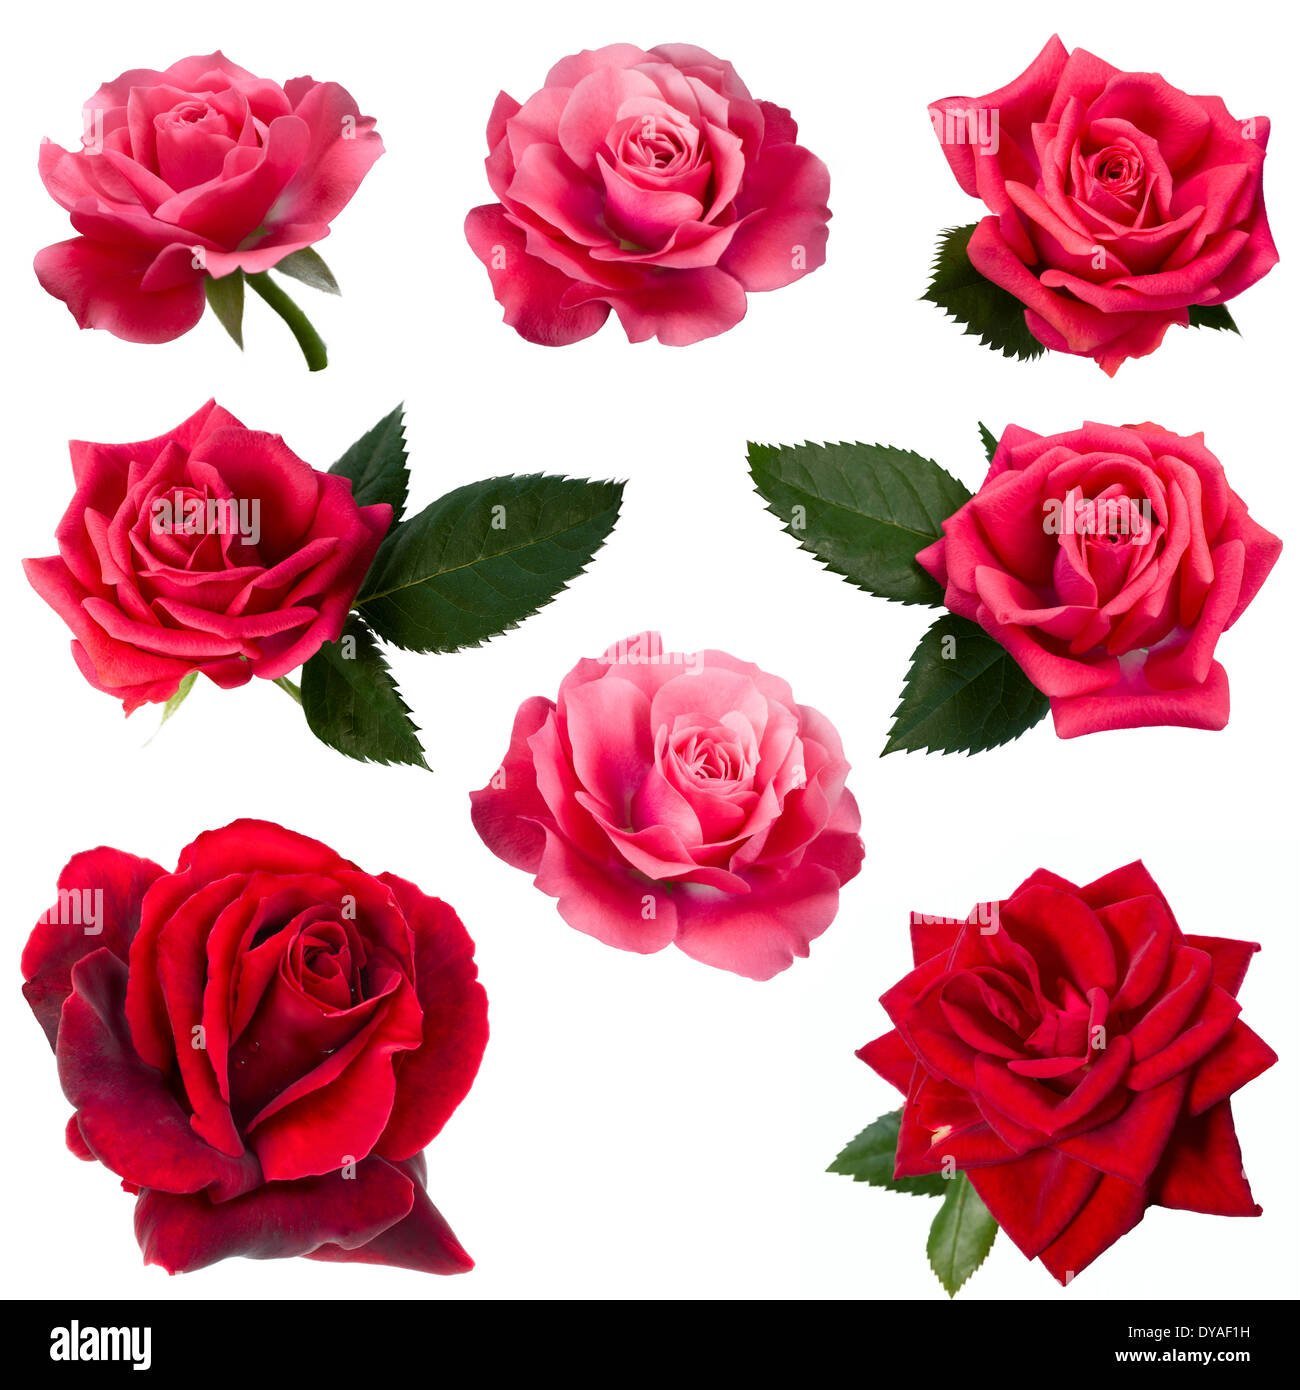 Rosa roja rodeada de ocho rosas